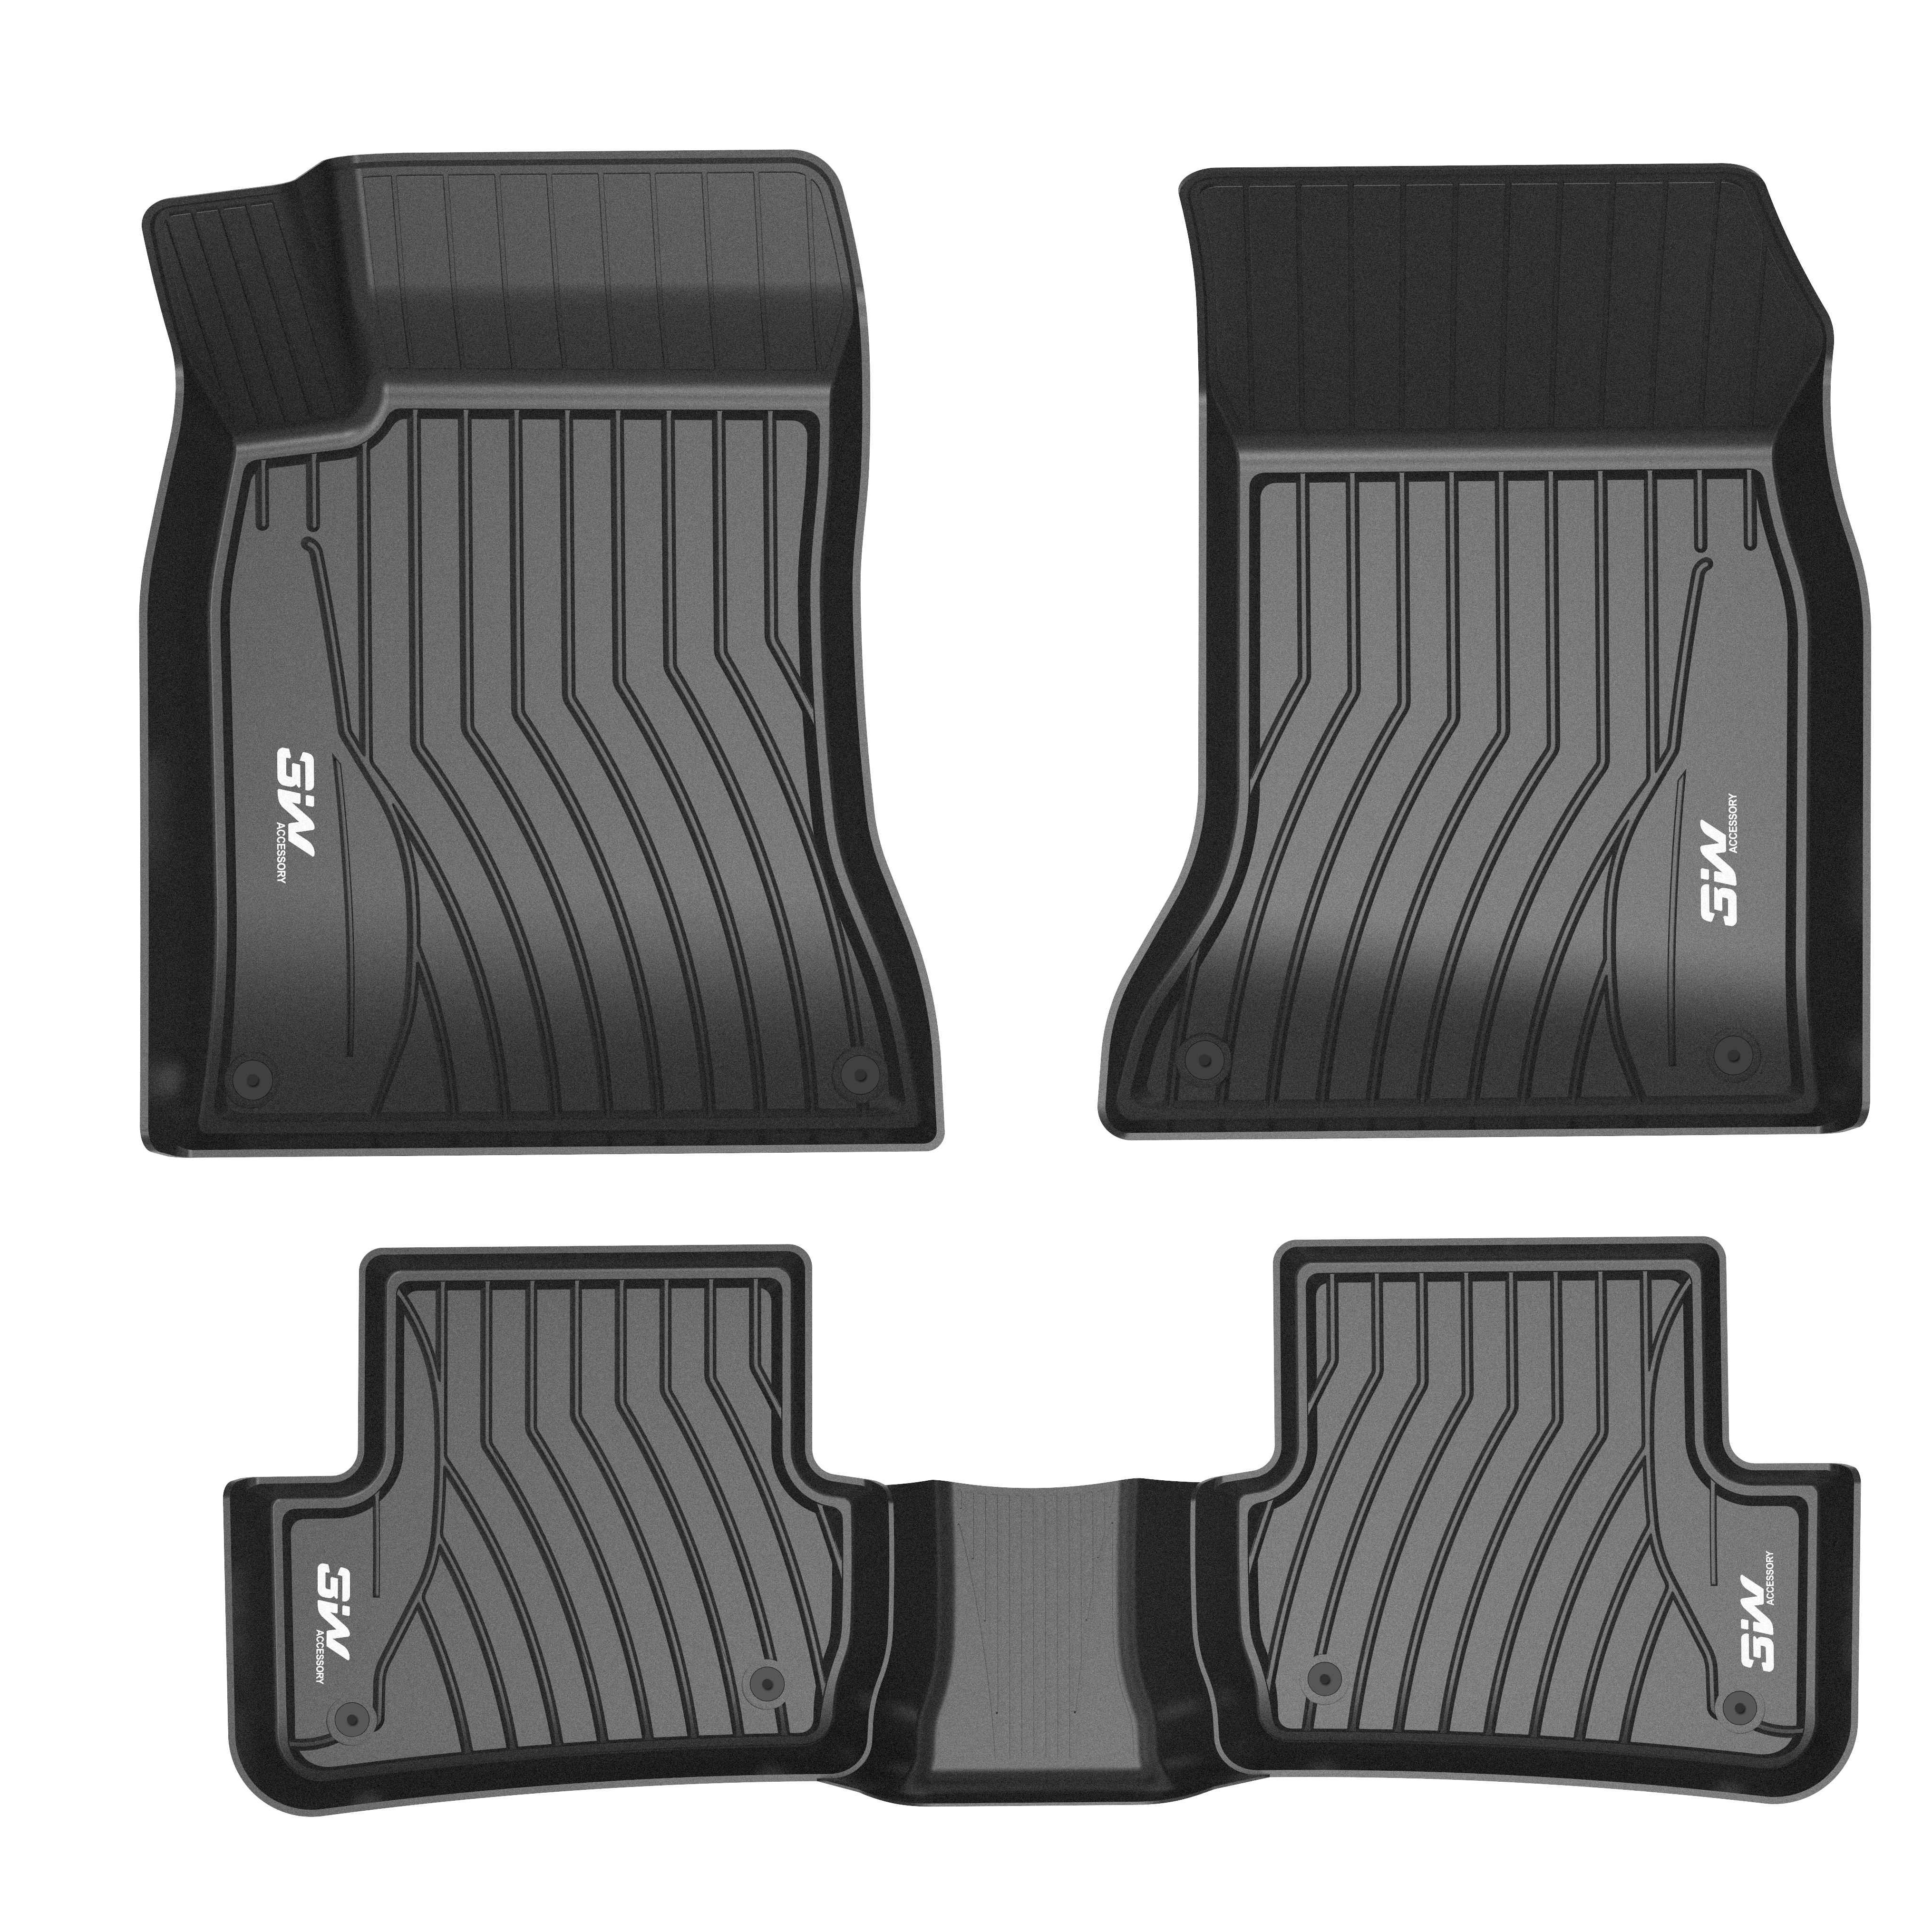 Thảm lót sàn xe ô tô dành cho Mercedes GLB 2020- Nhãn hiệu Macsim 3W chất liệu nhựa TPE đúc khuôn cao cấp - màu đen